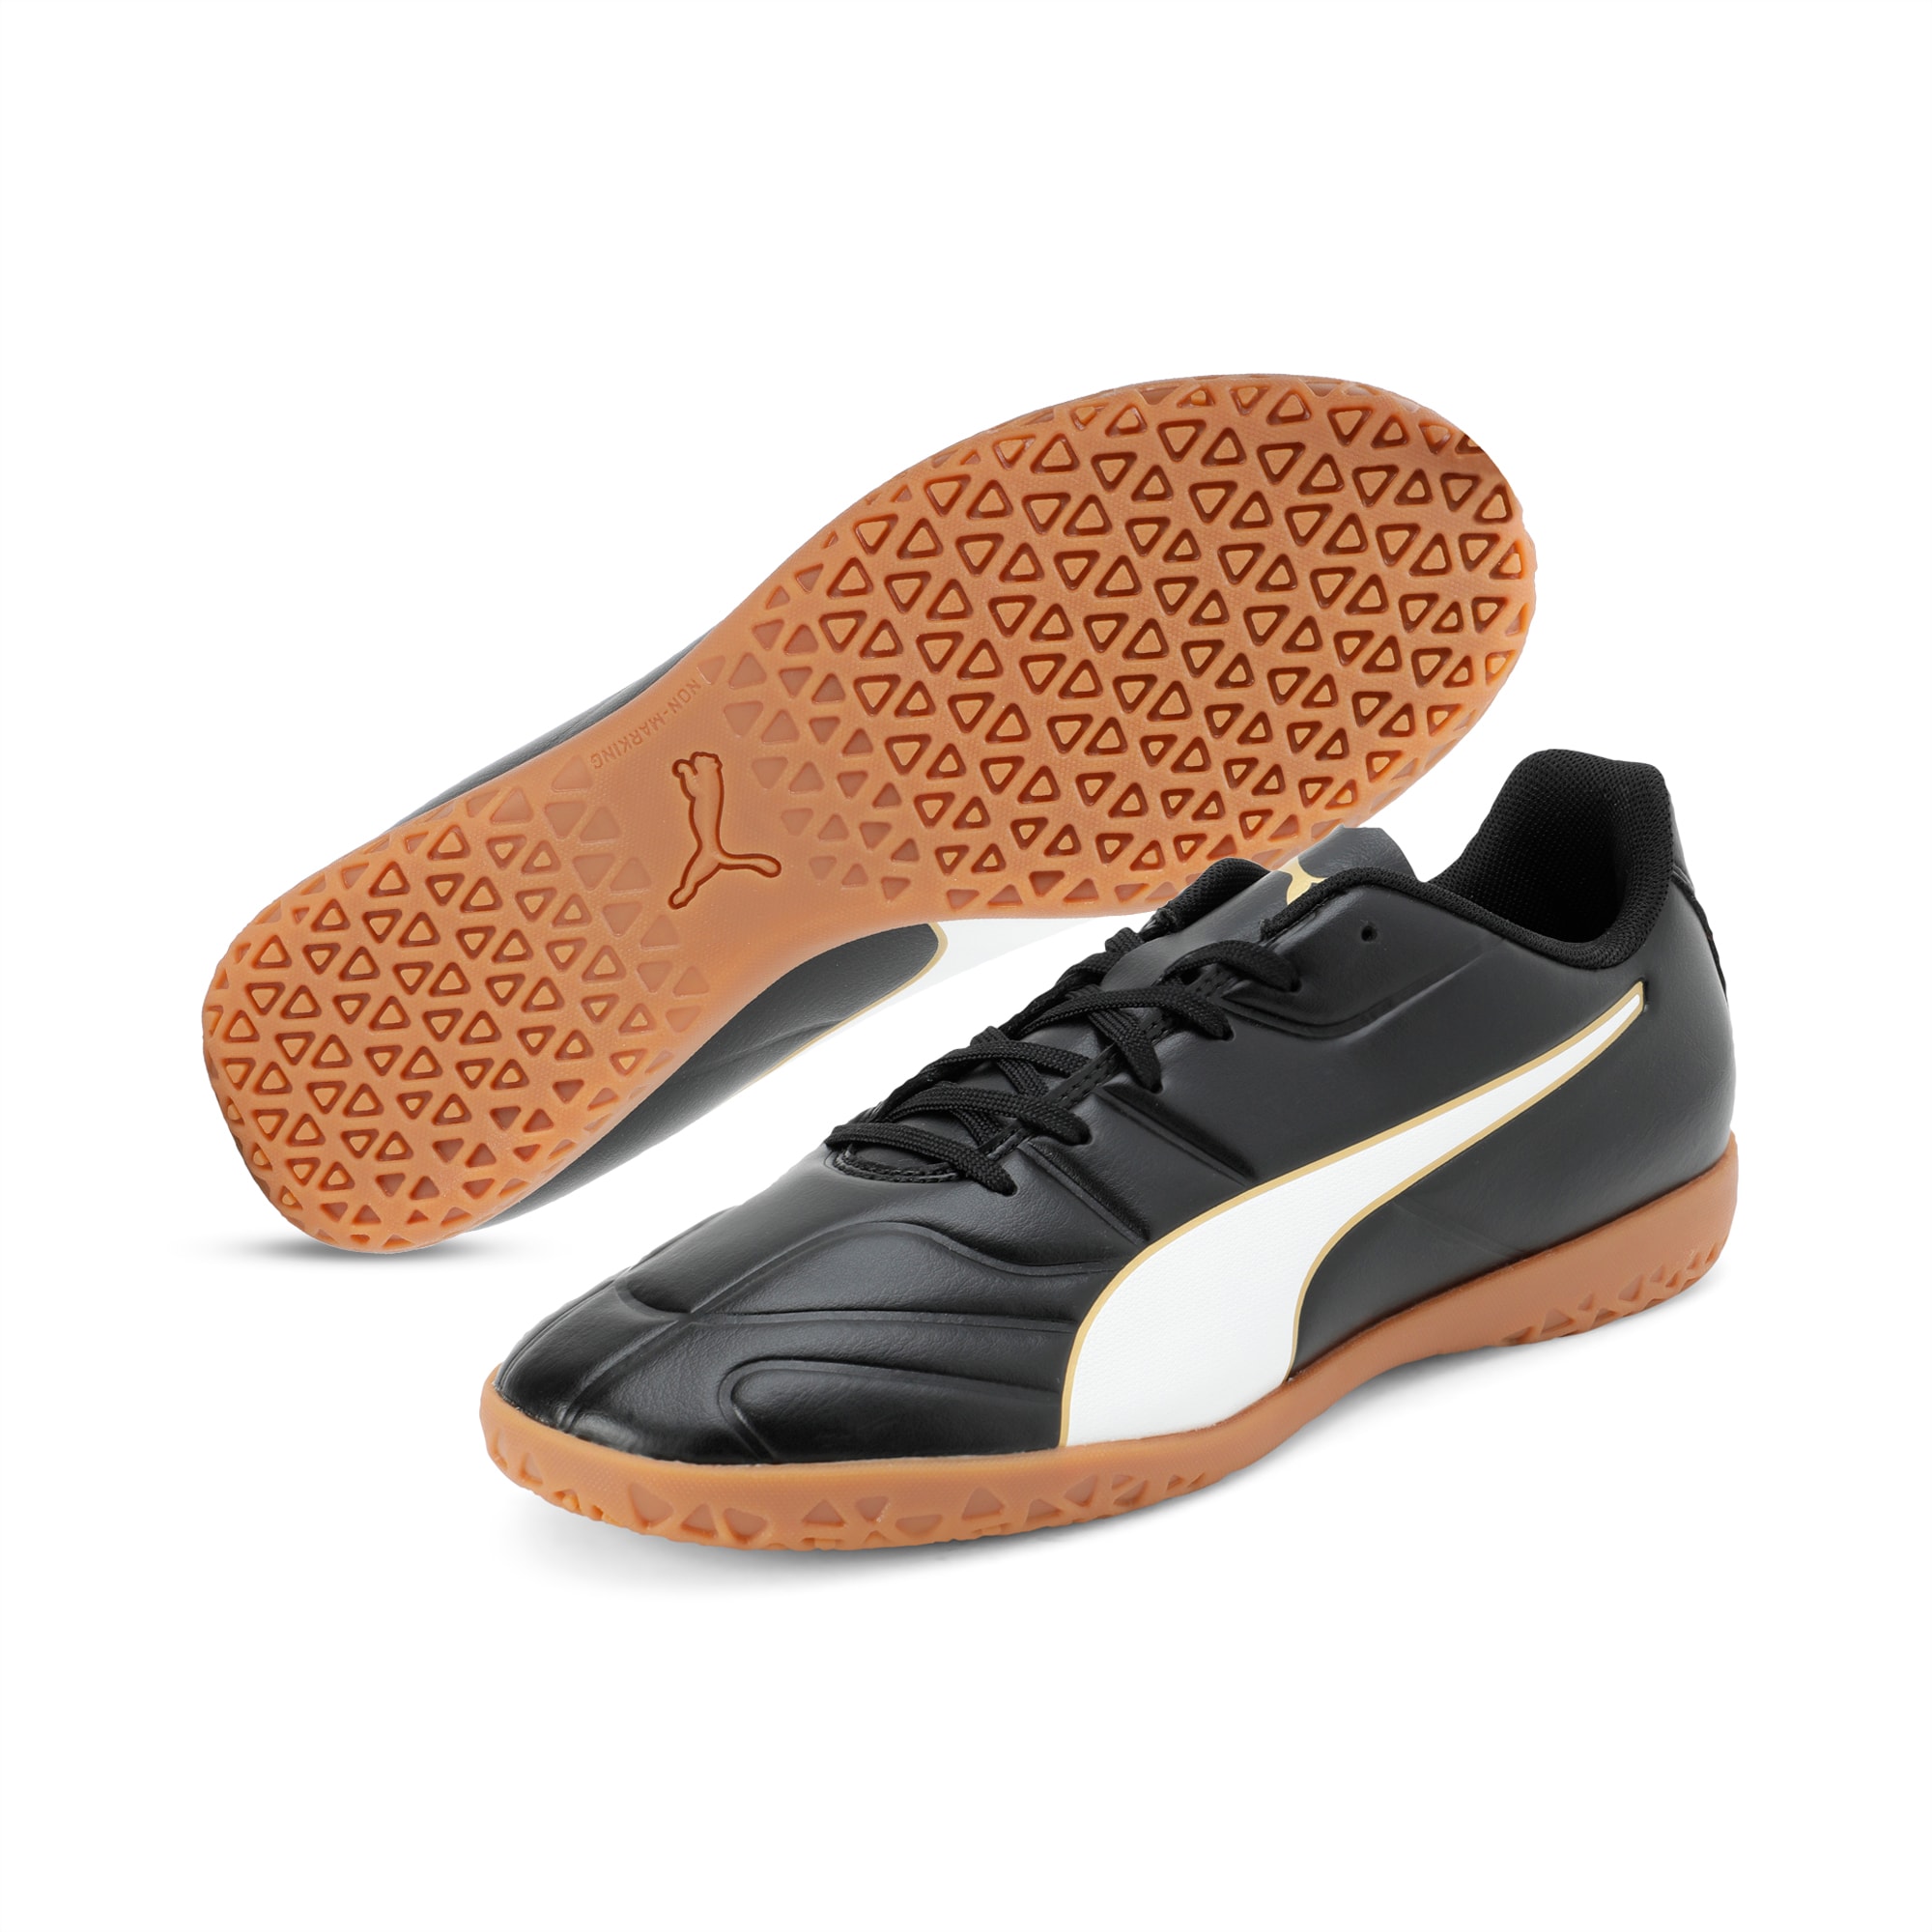 puma classico c indoor football shoes mens